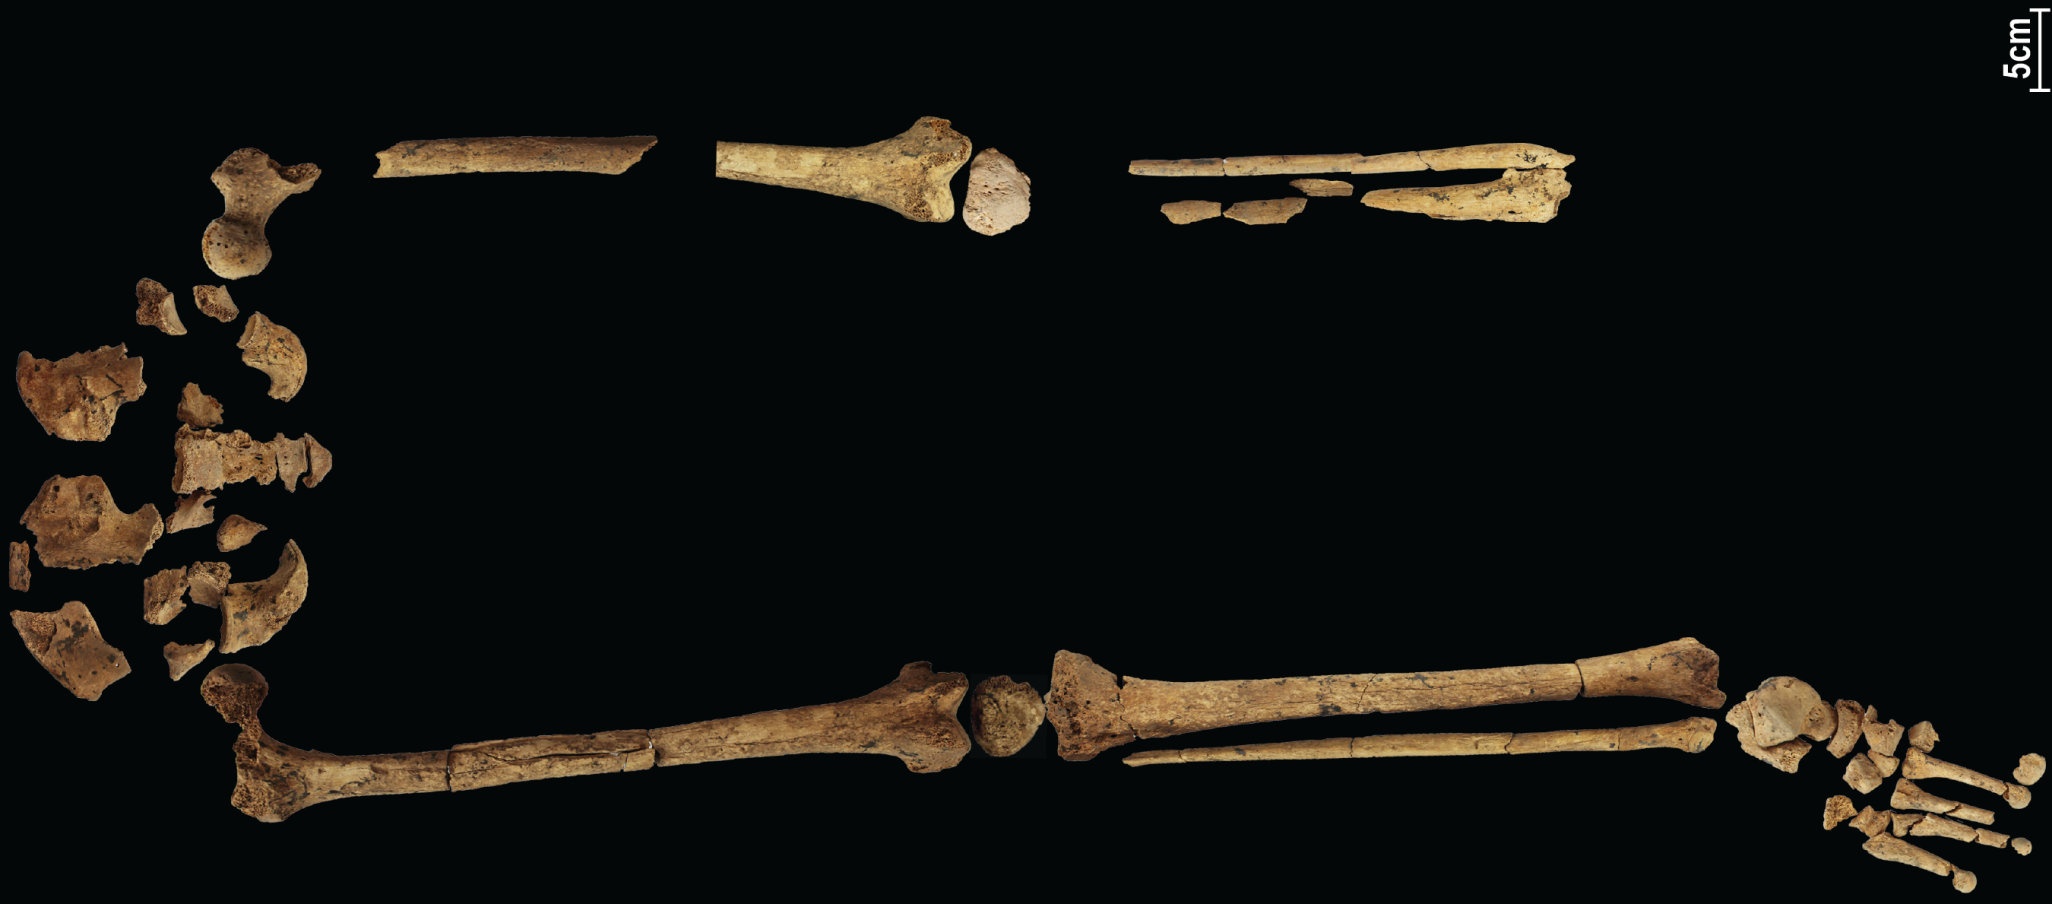 Một bộ xương 31,000 năm tuổi cho thấy cuộc phẫu thuật phức tạp sớm nhất được biết đến có thể viết lại lịch sử! 4